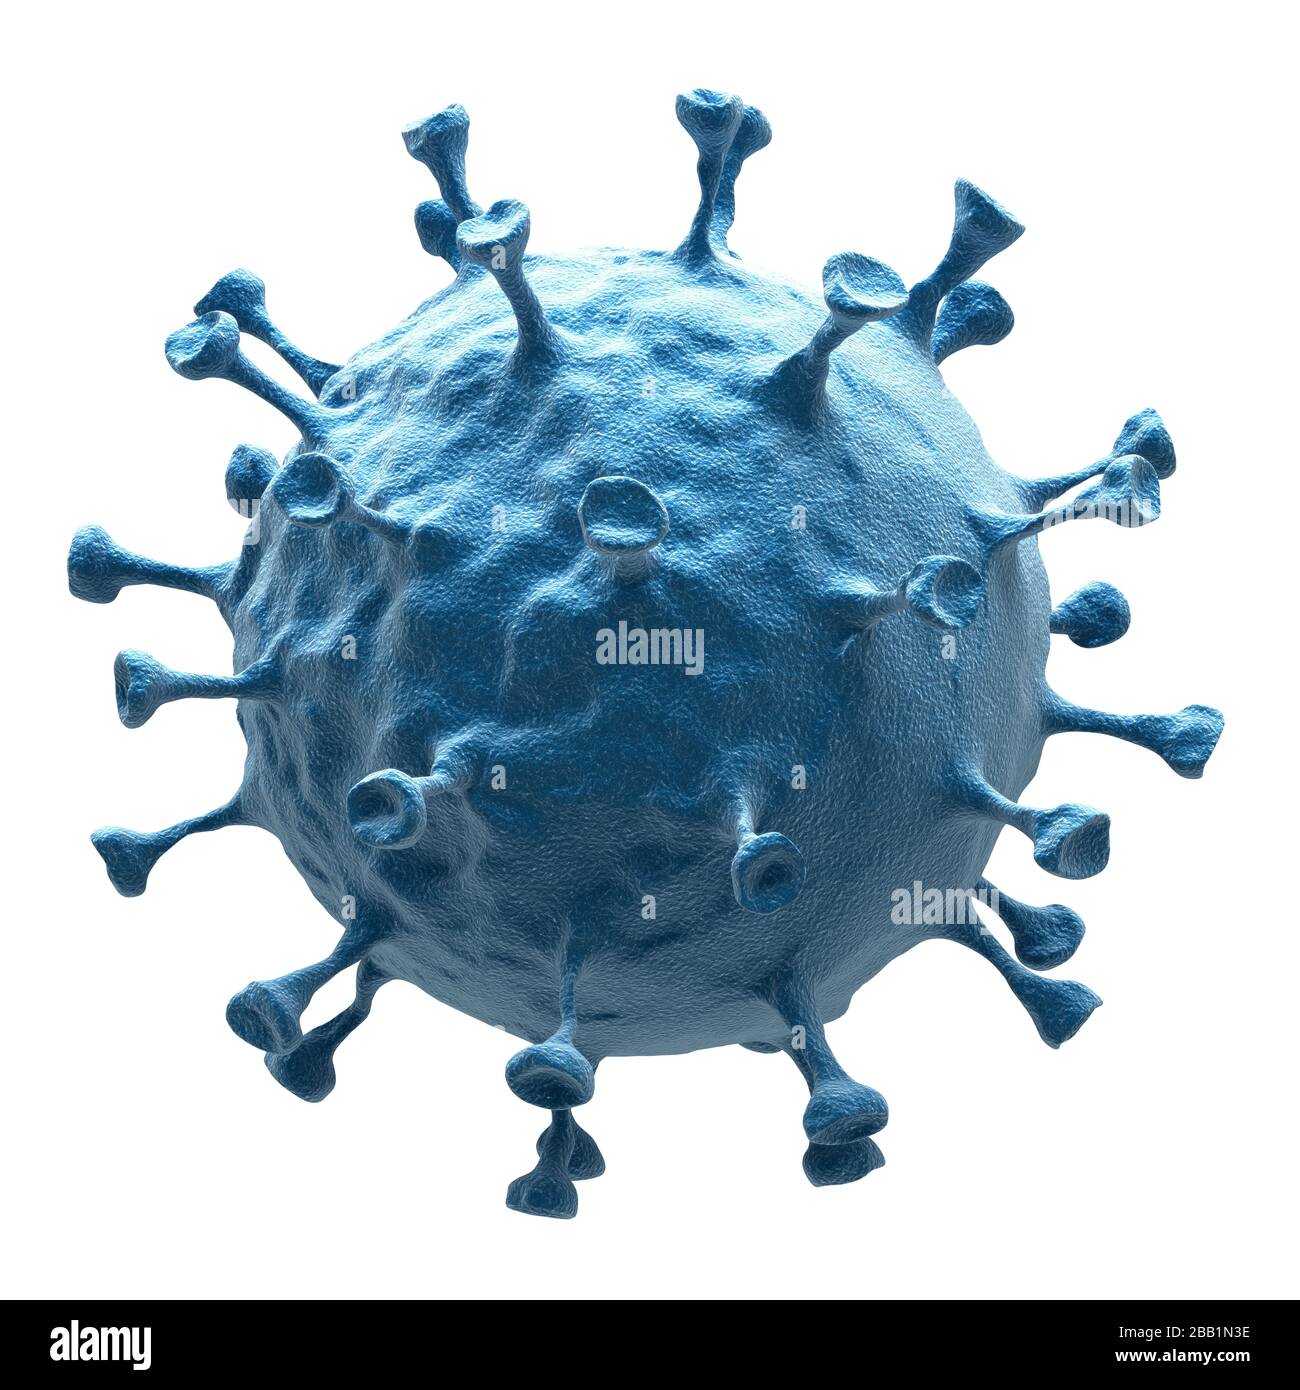 Corona virus Covid-19 (aislado con ruta de recorte) Foto de stock